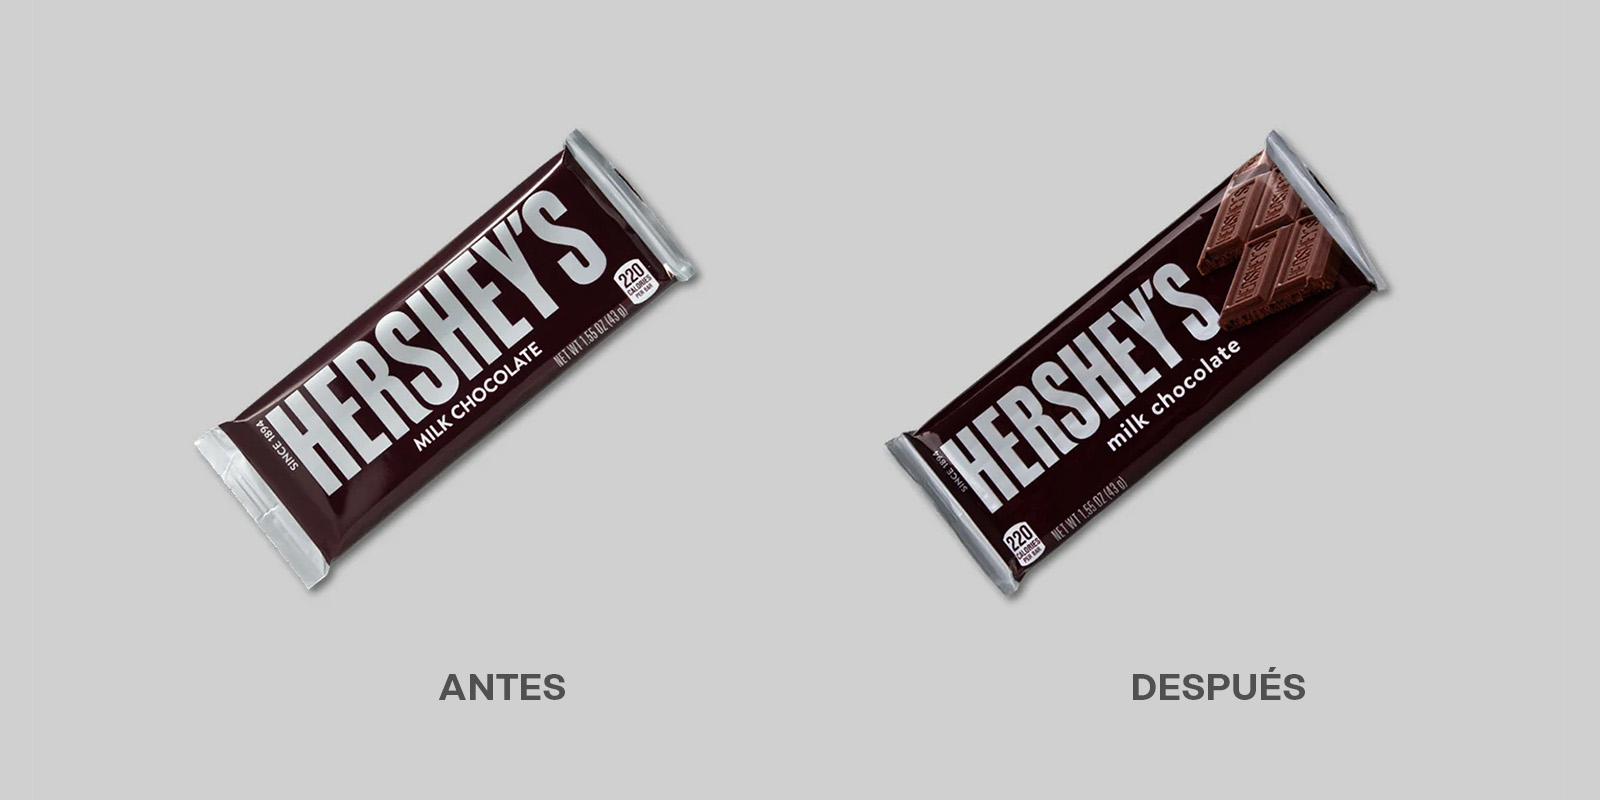 Antes y después del rediseño de packaging de los chocolates Hershey 's. El nuevo envase muestra una imagen apetitosa de una barra de chocolate asomando al costado del logo.